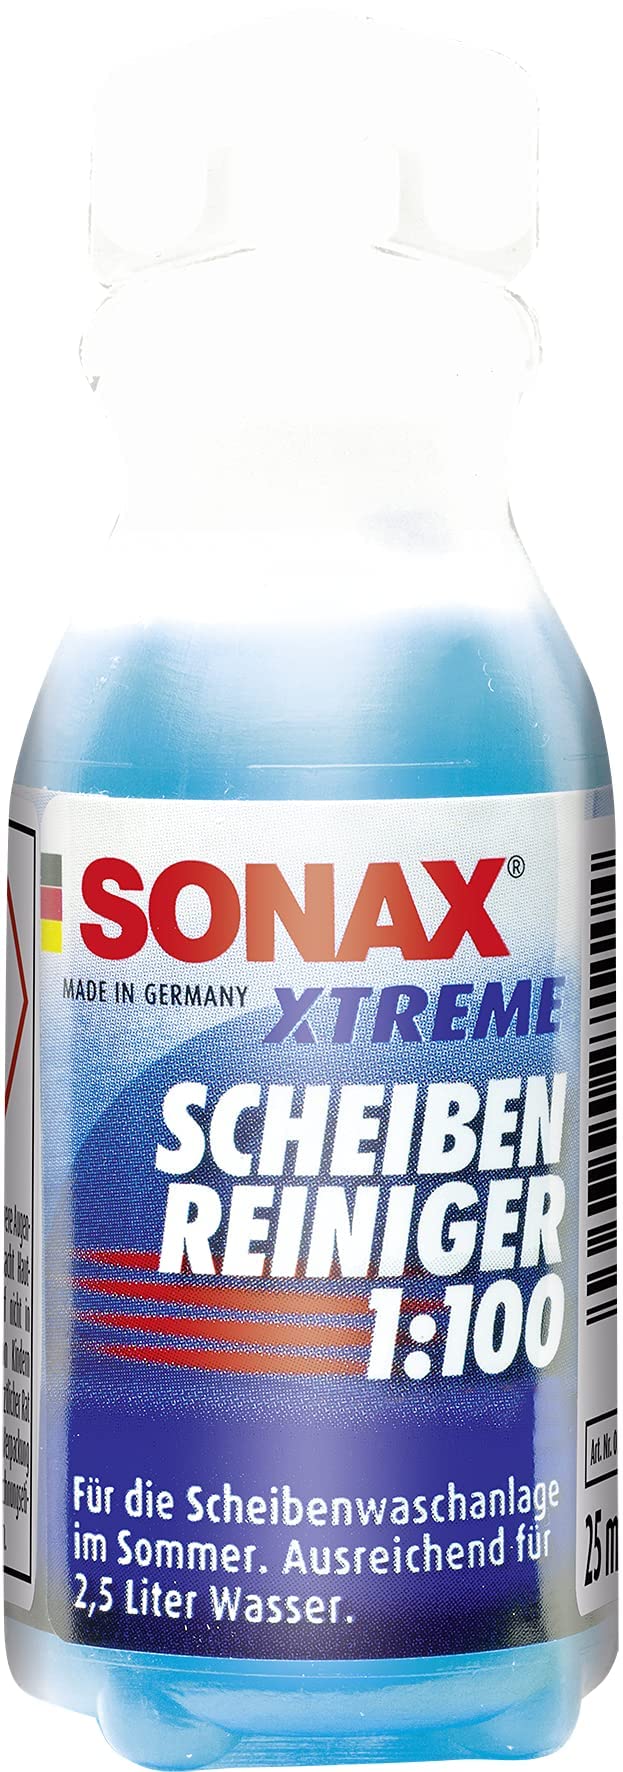 SONAX XTREME ScheibenReiniger 1:100 (25 ml) sorgt sekundenschnell für eine sichere Sicht | Art-Nr. 02711000 von SONAX